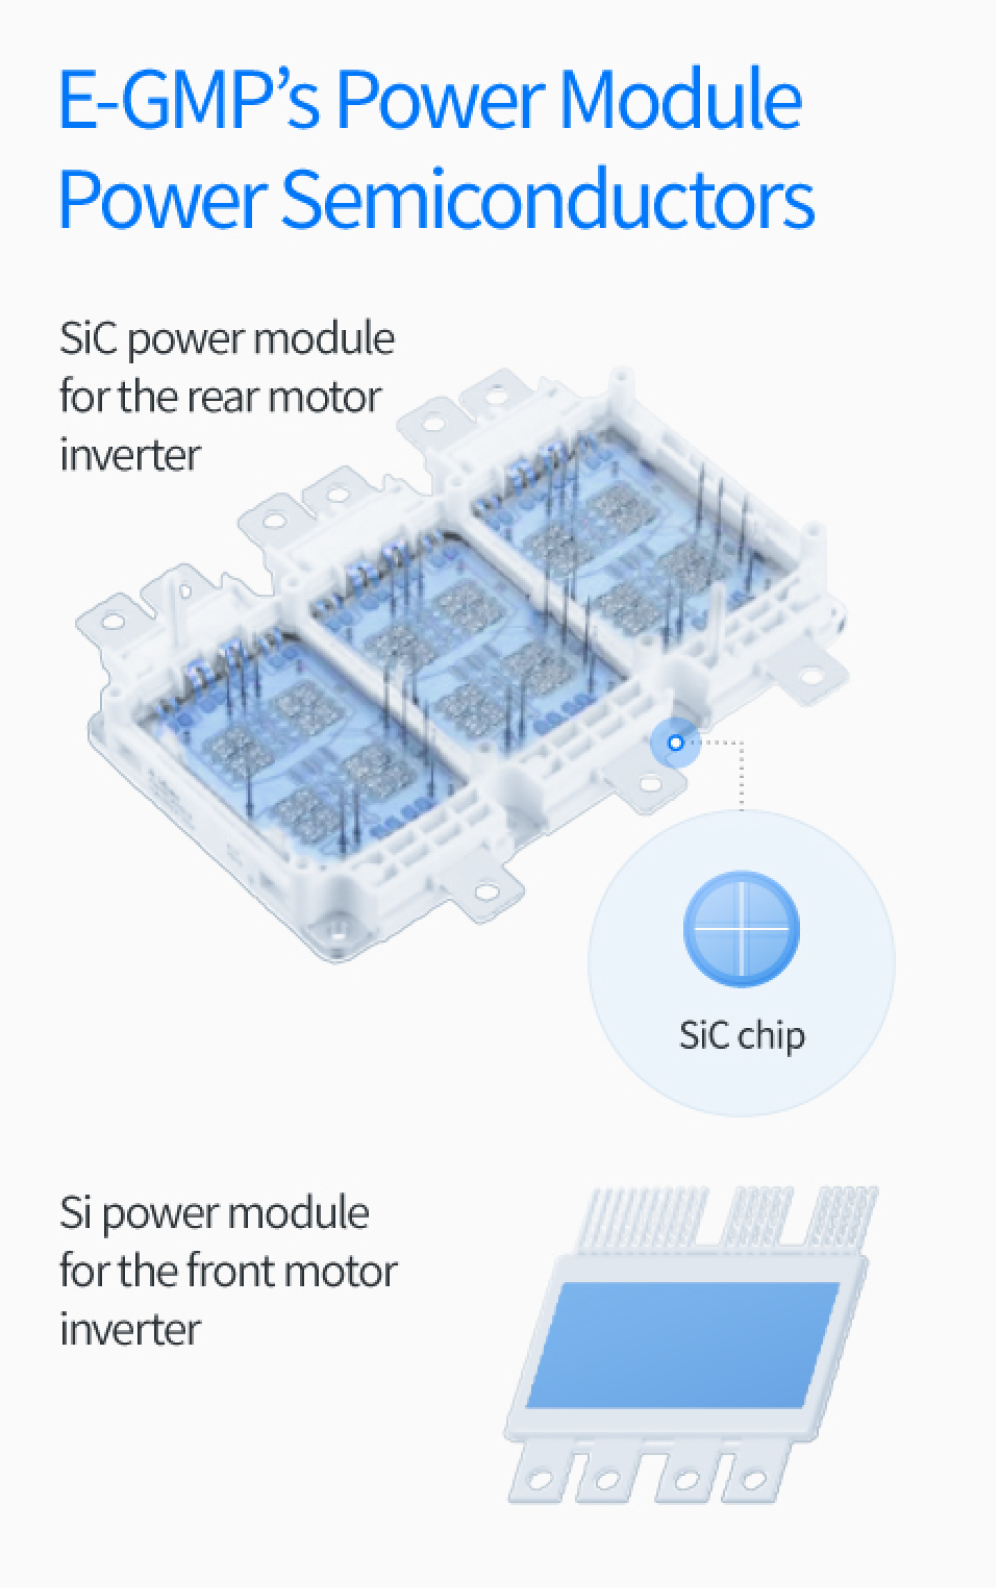 Description of the power module power semiconductor of the E-GMP